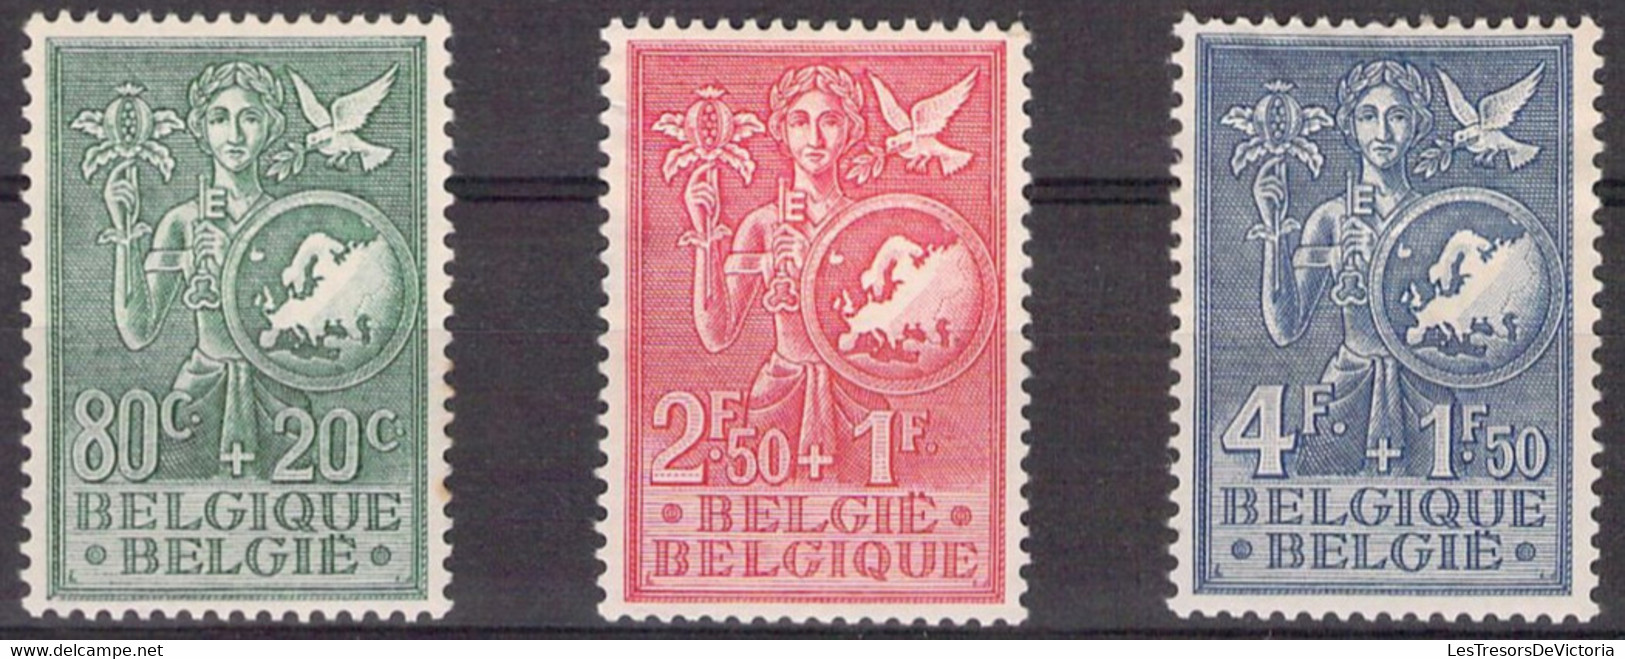 Belgique -  COB 927/29 * - 1953 - Cote 45 COB 2022 - Aminci Sur Le 929 - Prix De Départ 5 Euros - Nuovi